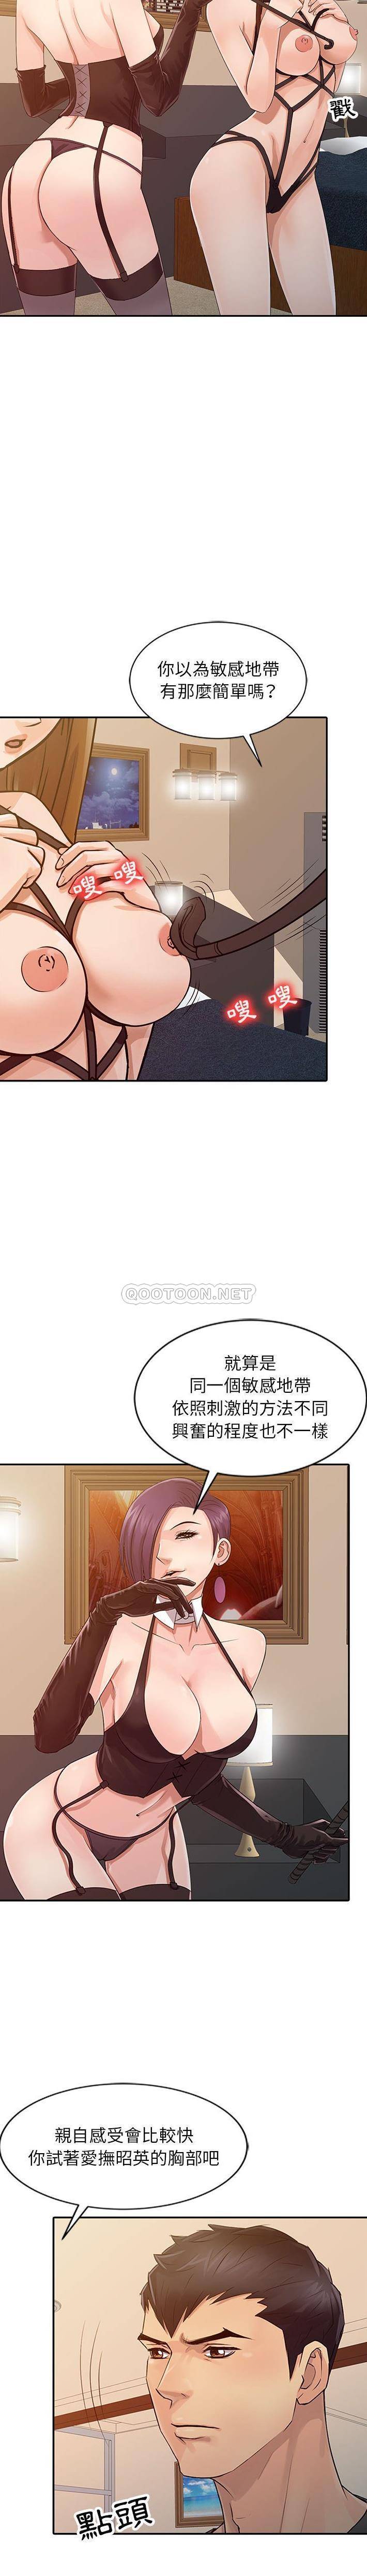 韩国污漫画 征服的滋味 第17话 8